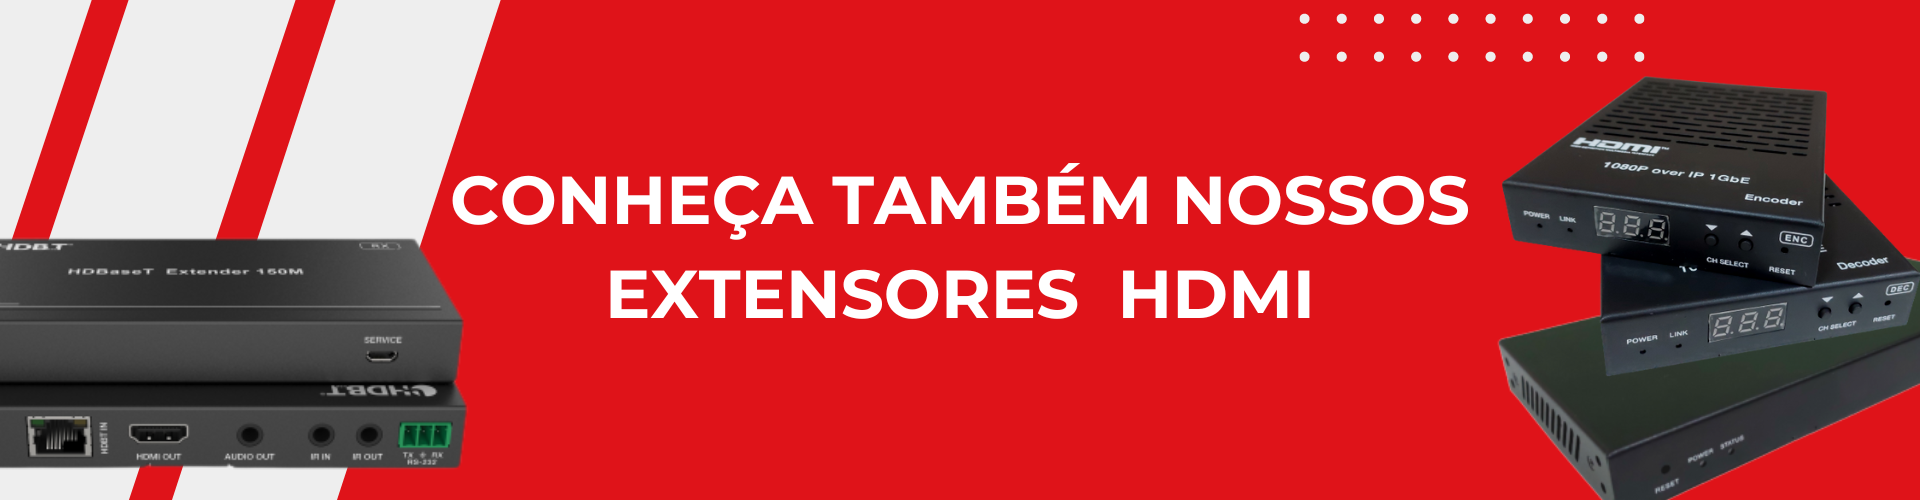 CONHEÇA NOSSOS EXTENSORES HDMI